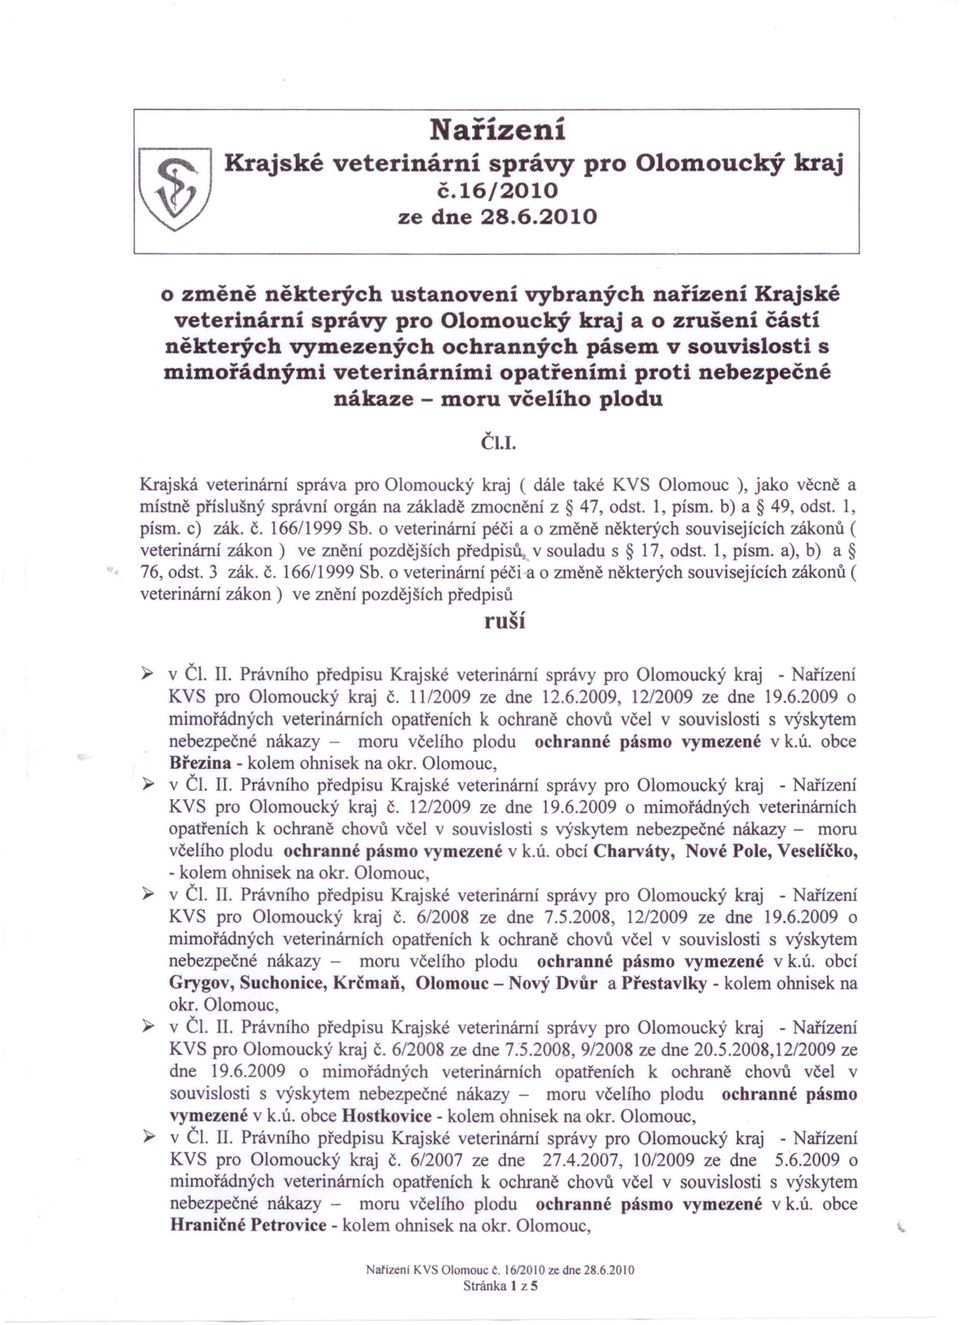 2010 o změně některých ustanovení vybraných nařízení Krajské veterinární správy pro Olomoucký kraj a o zrušení částí některých vymezených ochranných pásem v souvislosti s mimořádnými veterinárními